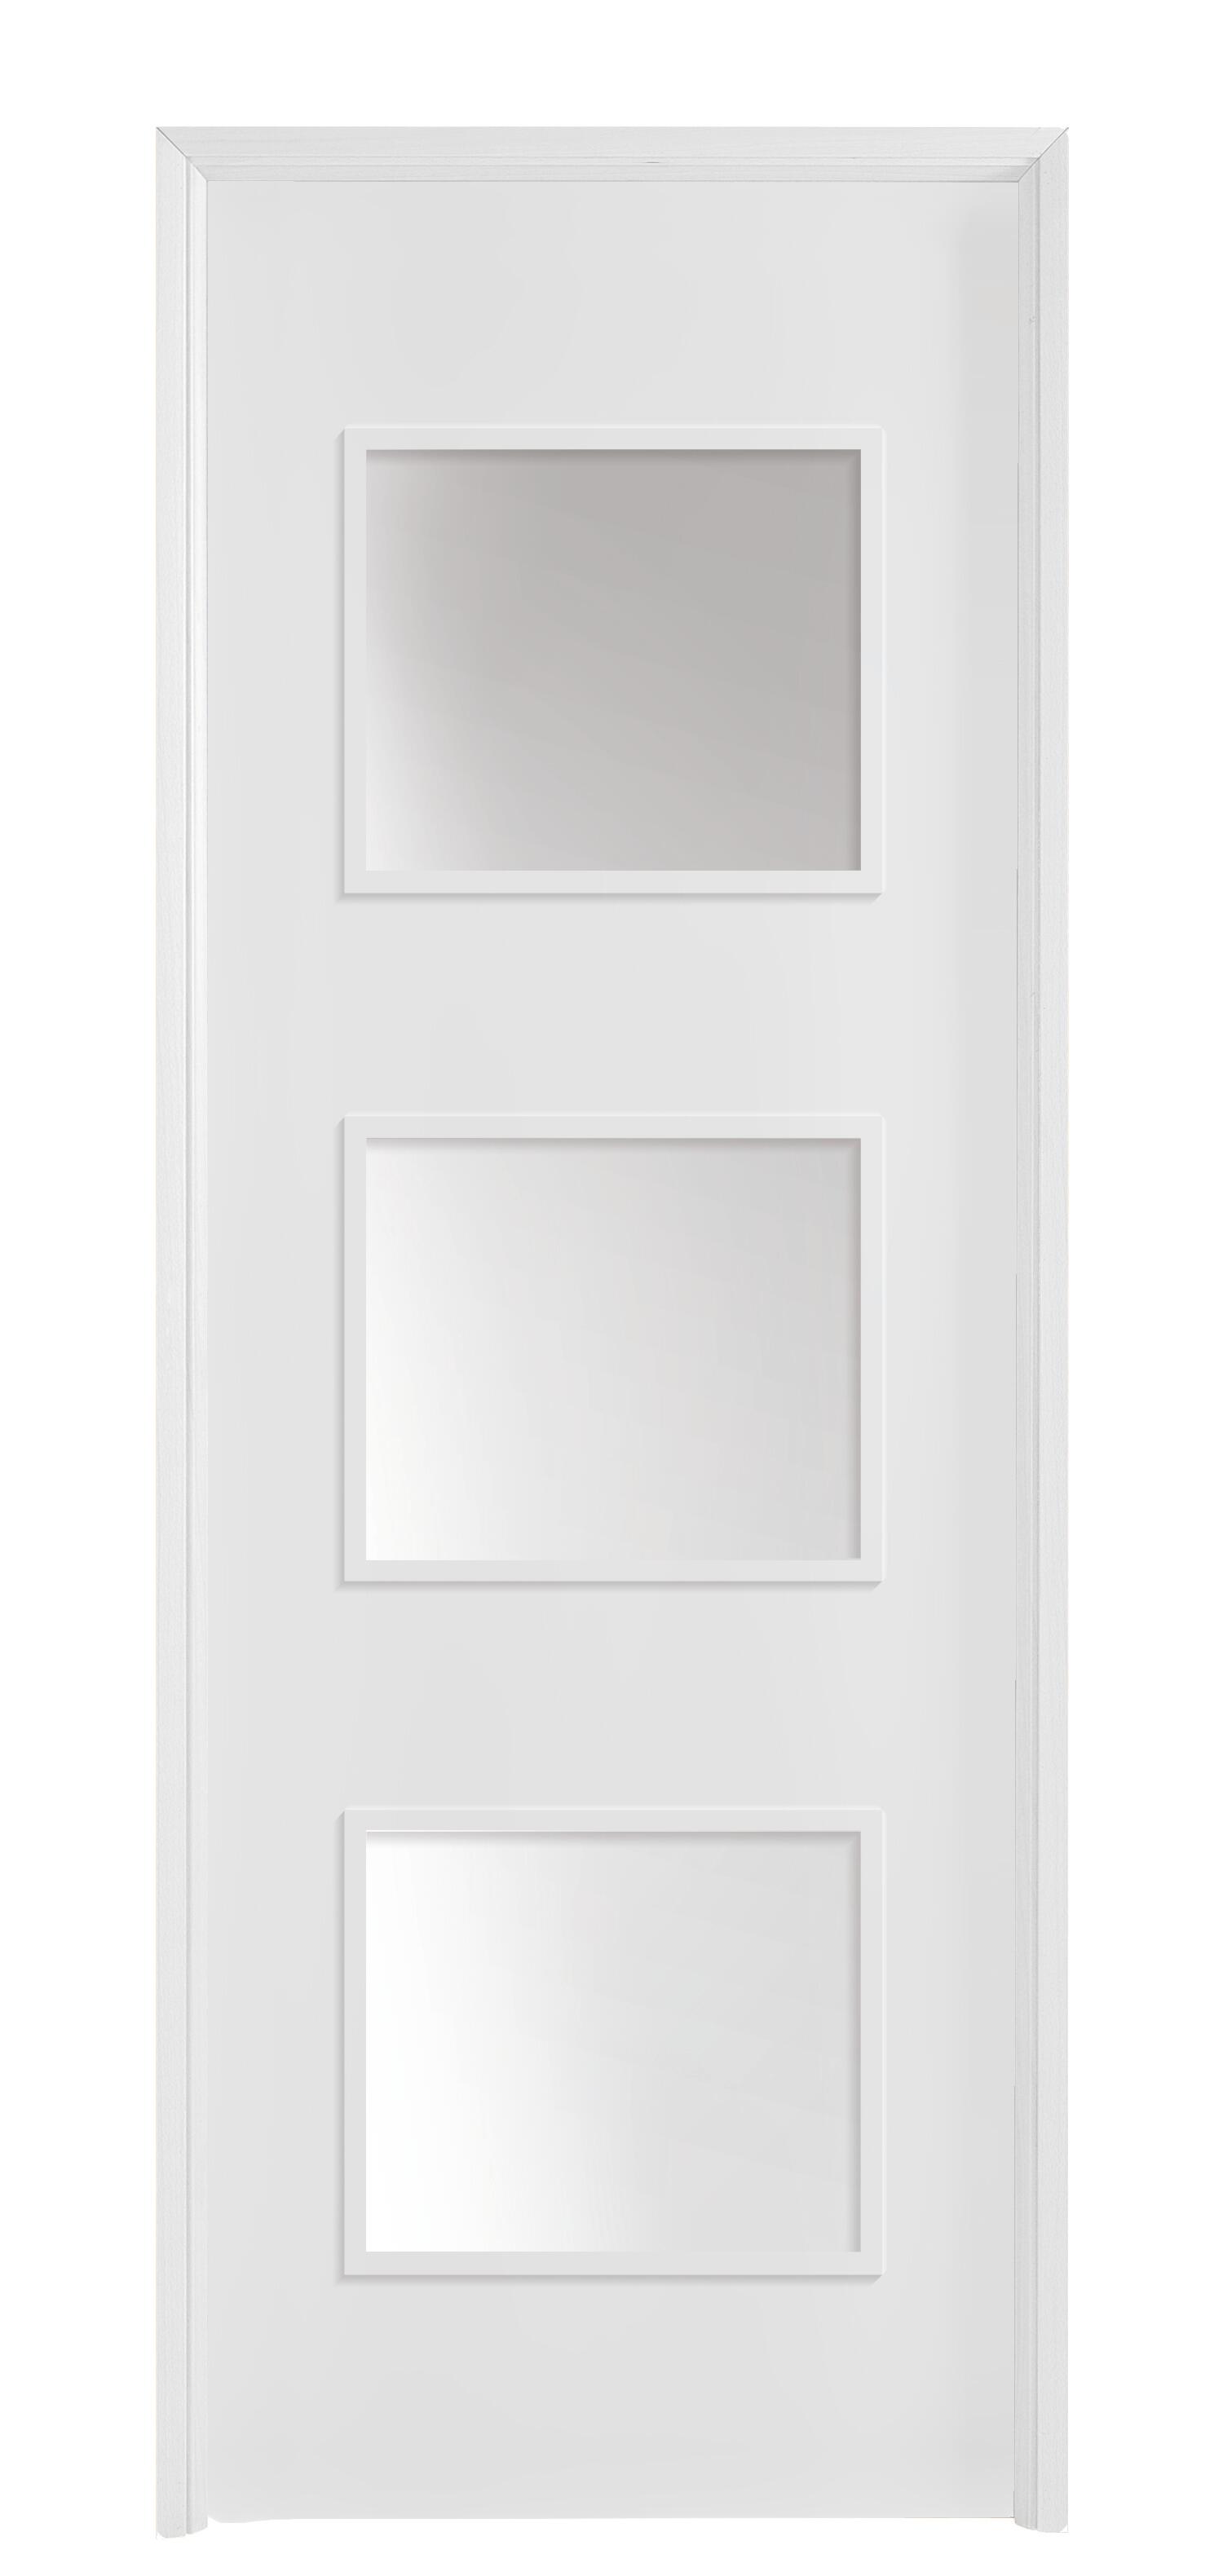 Puerta con cristal bari plus blanca 6x2x92,5 cm i